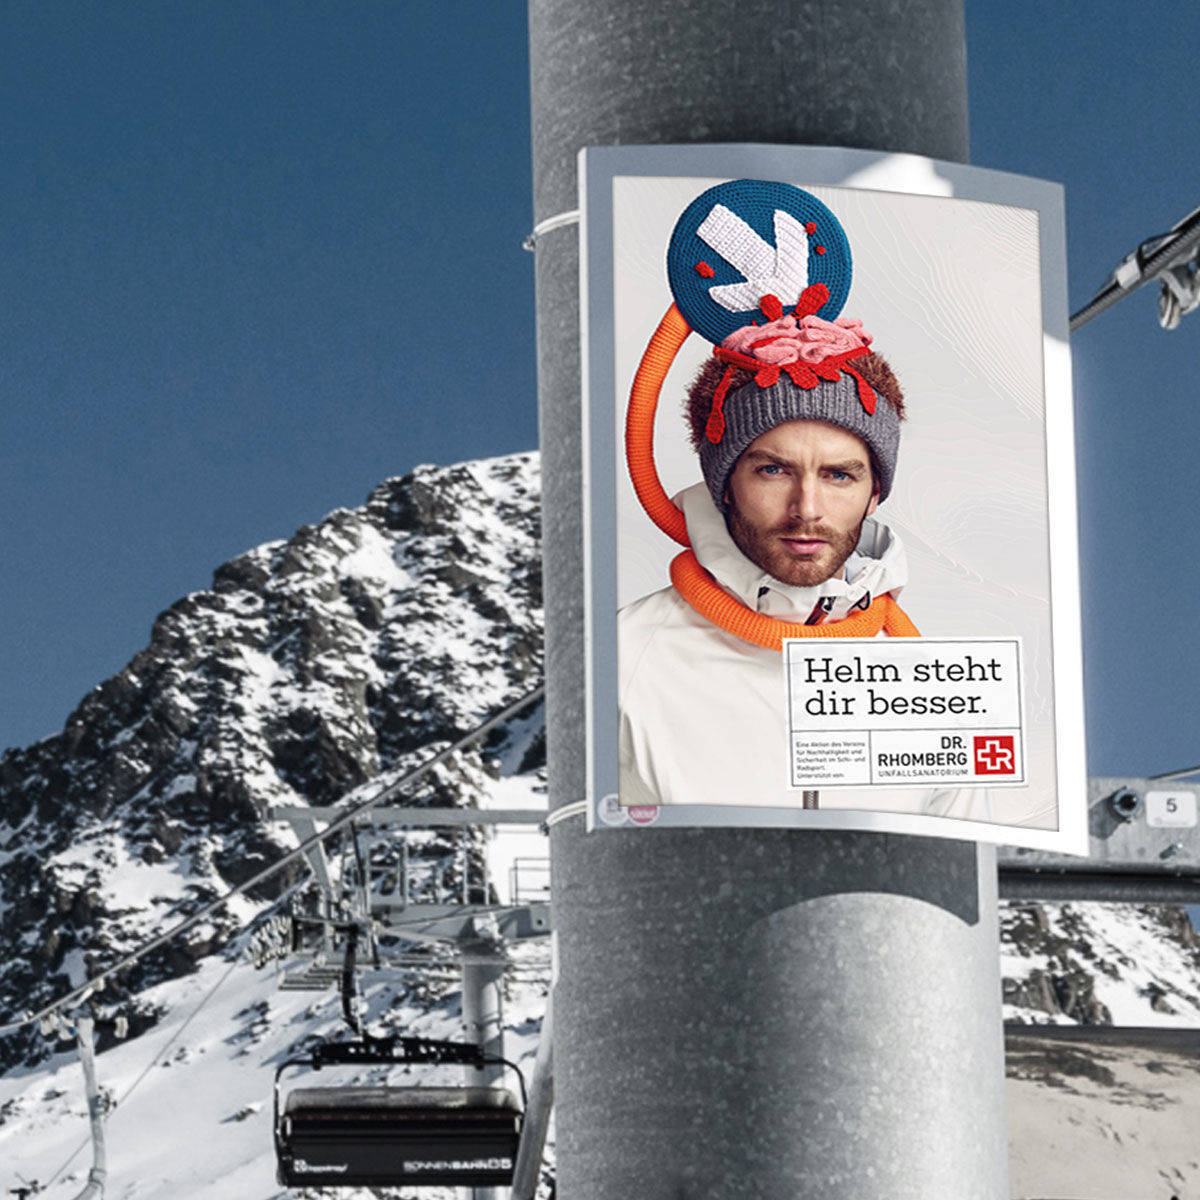 Motiv der Hello-Kampagne für das Skigebiet Lech Zürs.